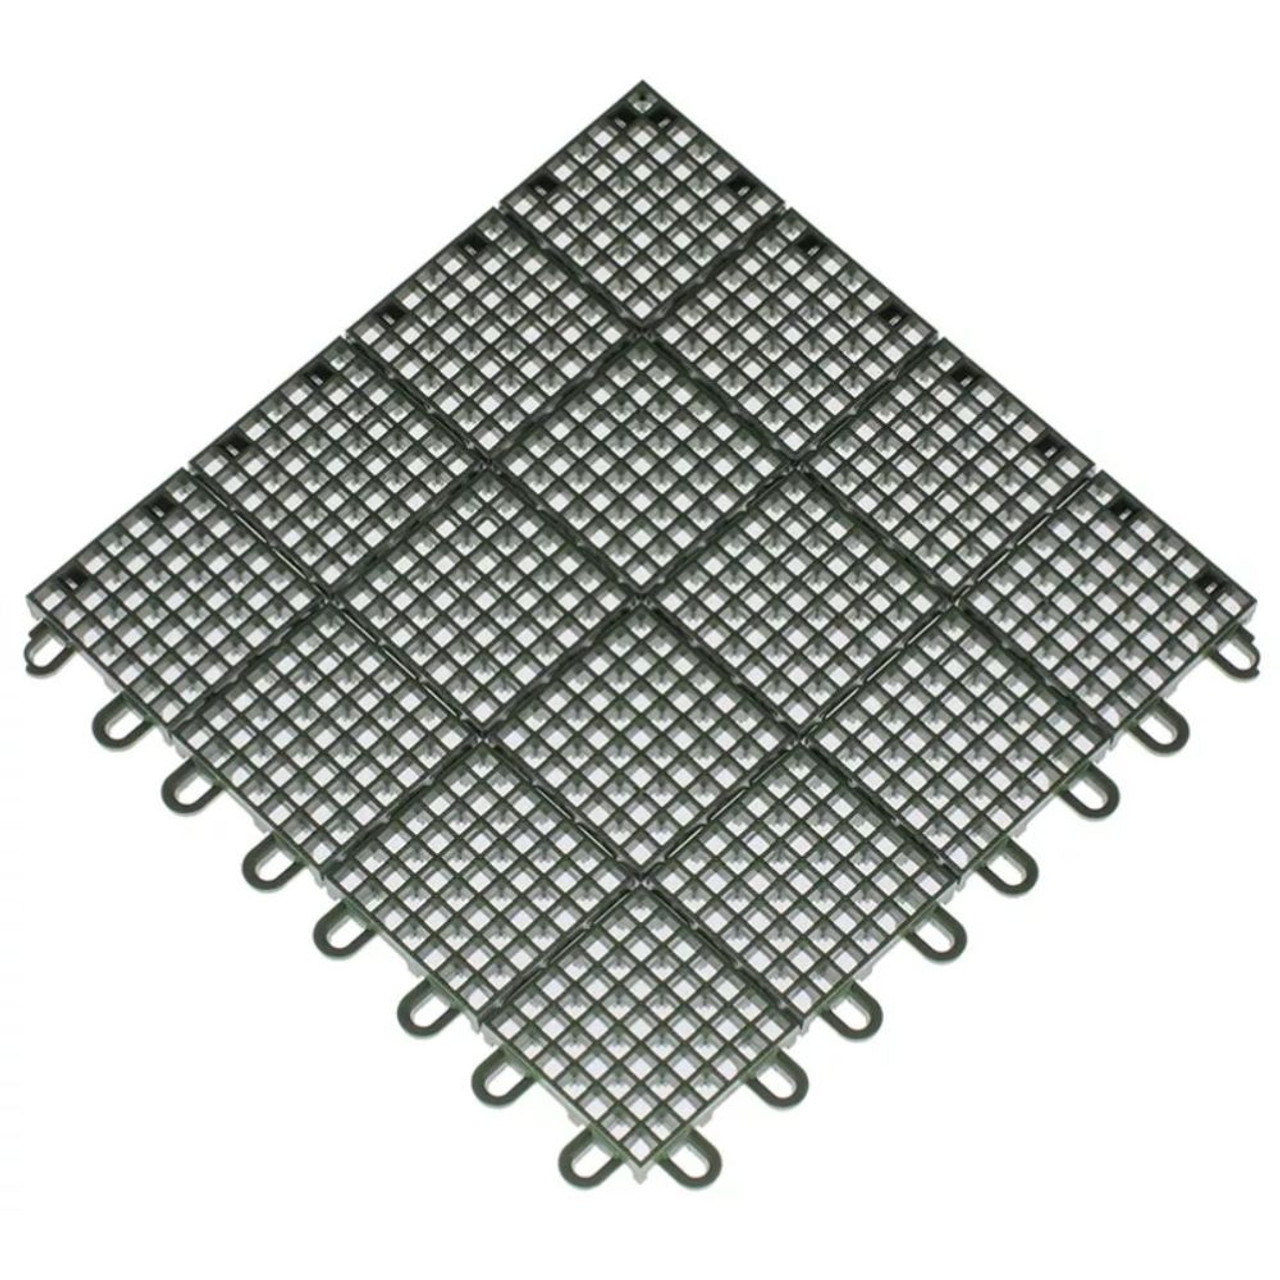 Tennis Flooring Kit - TopCourt Tile